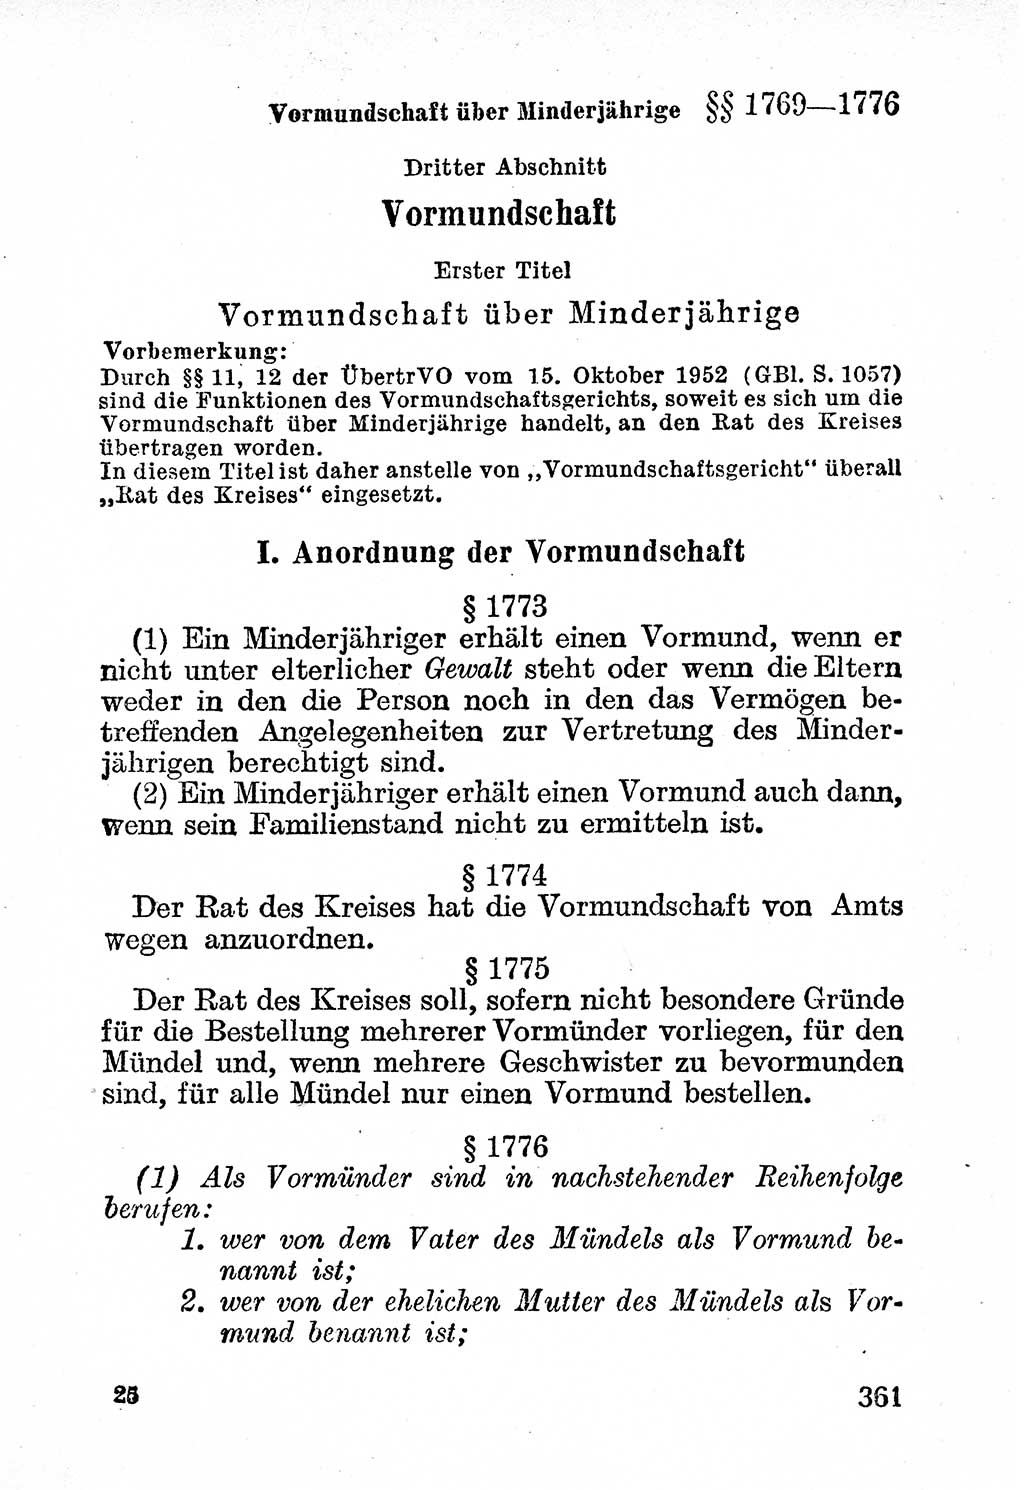 Bürgerliches Gesetzbuch (BGB) nebst wichtigen Nebengesetzen [Deutsche Demokratische Republik (DDR)] 1956, Seite 361 (BGB Nebenges. DDR 1956, S. 361)